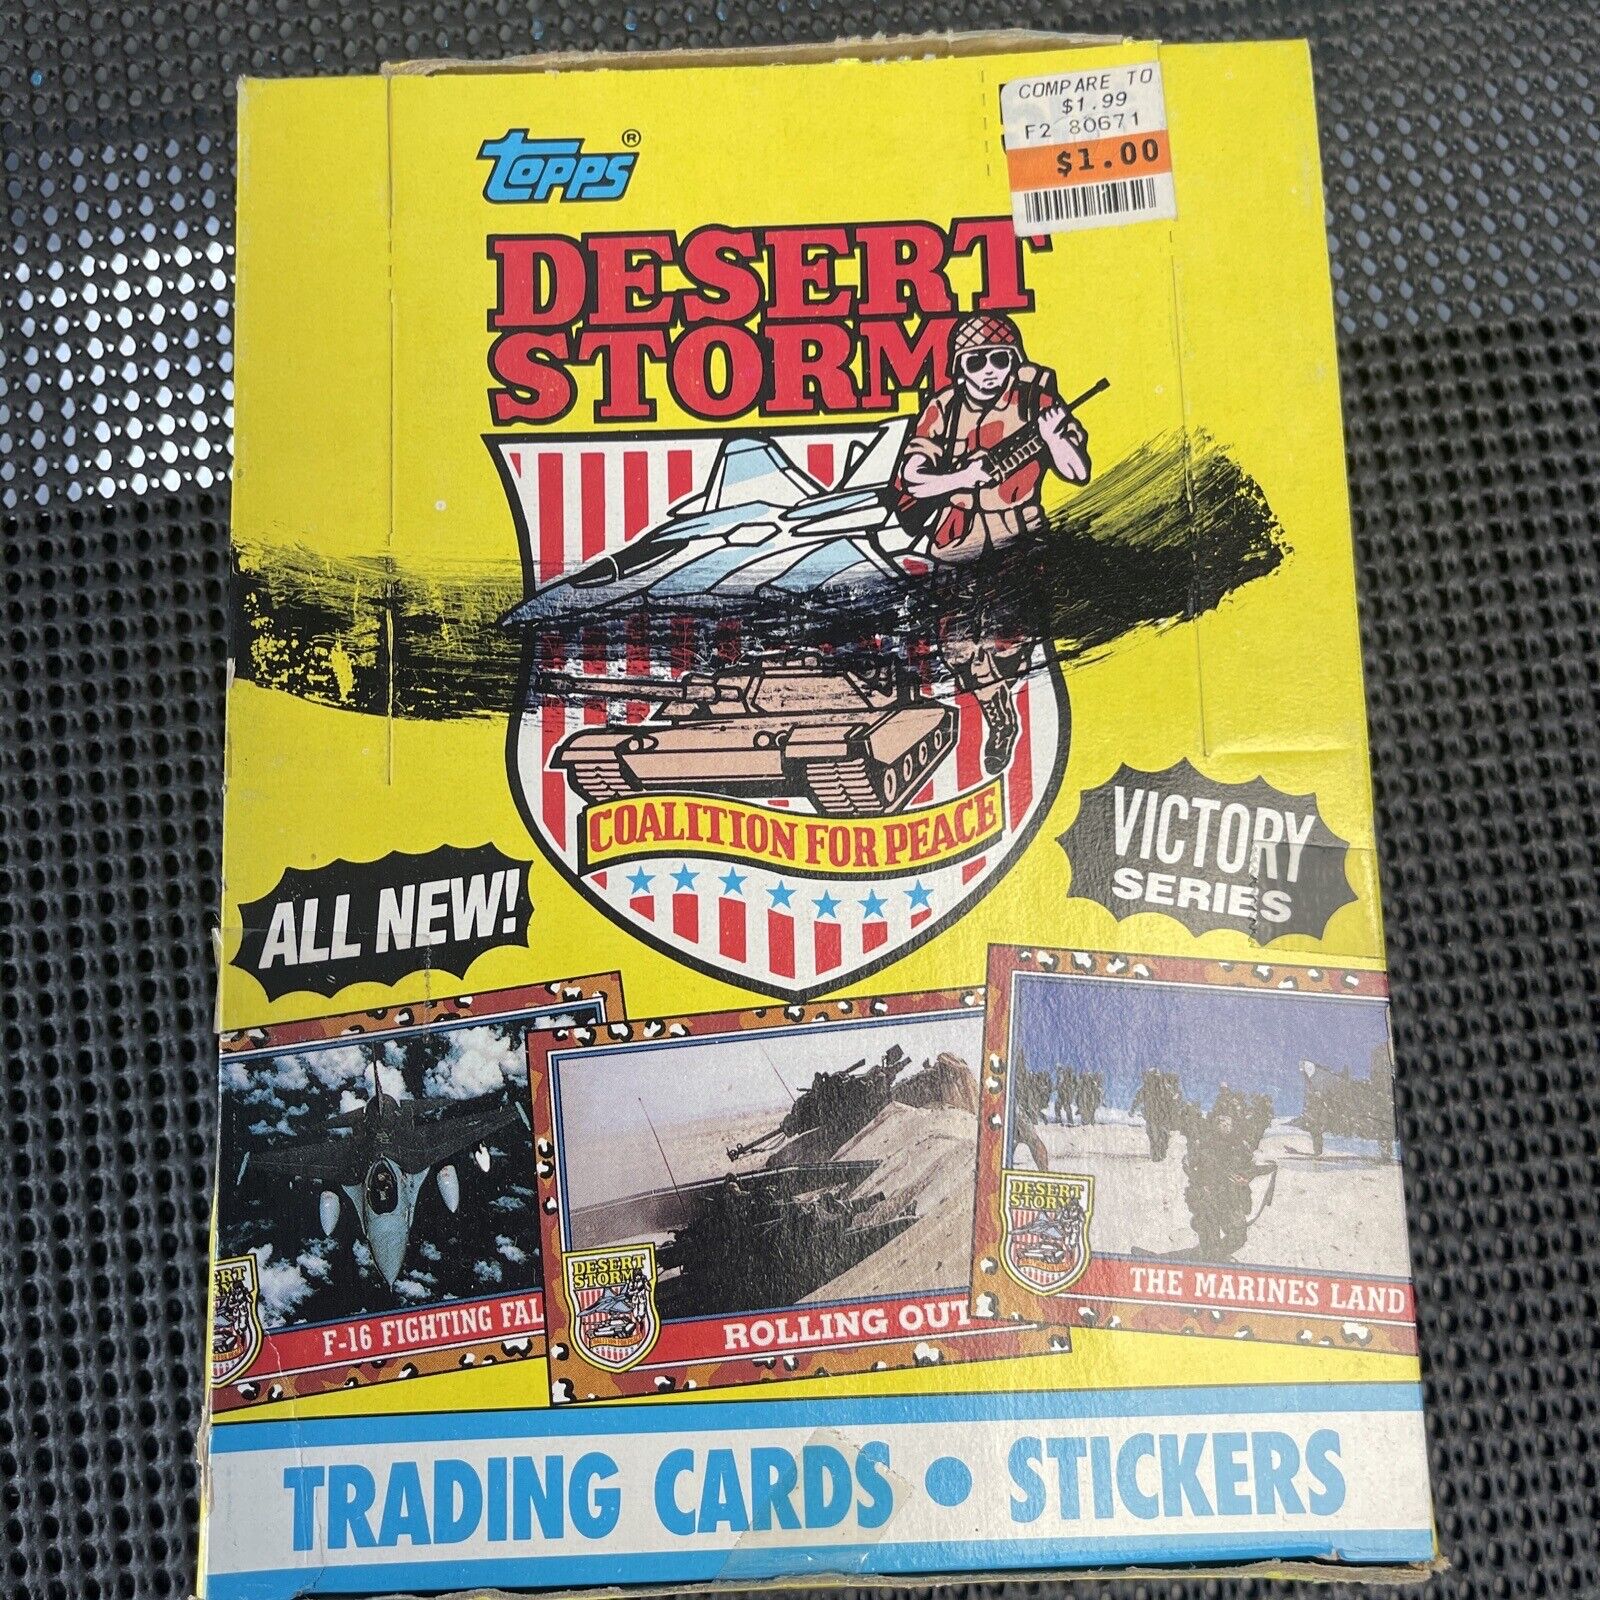 TOPPS 1991 DESERT STORM Victory Series Trading Cards Full Box 36 Sealed Packs